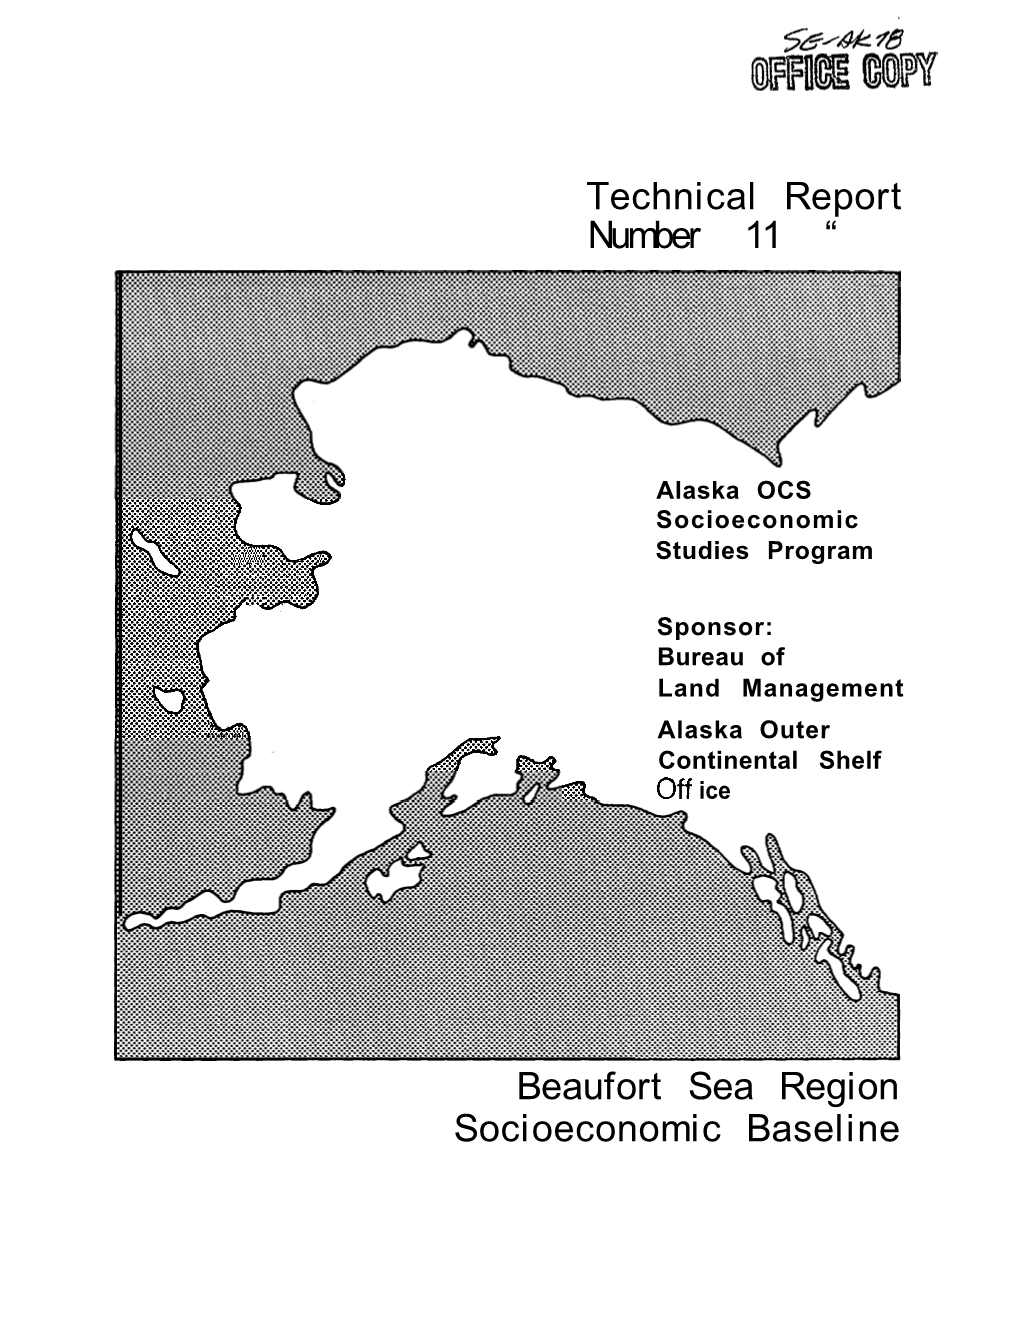 Beaufort Sea Region Socioeconomic Baseline